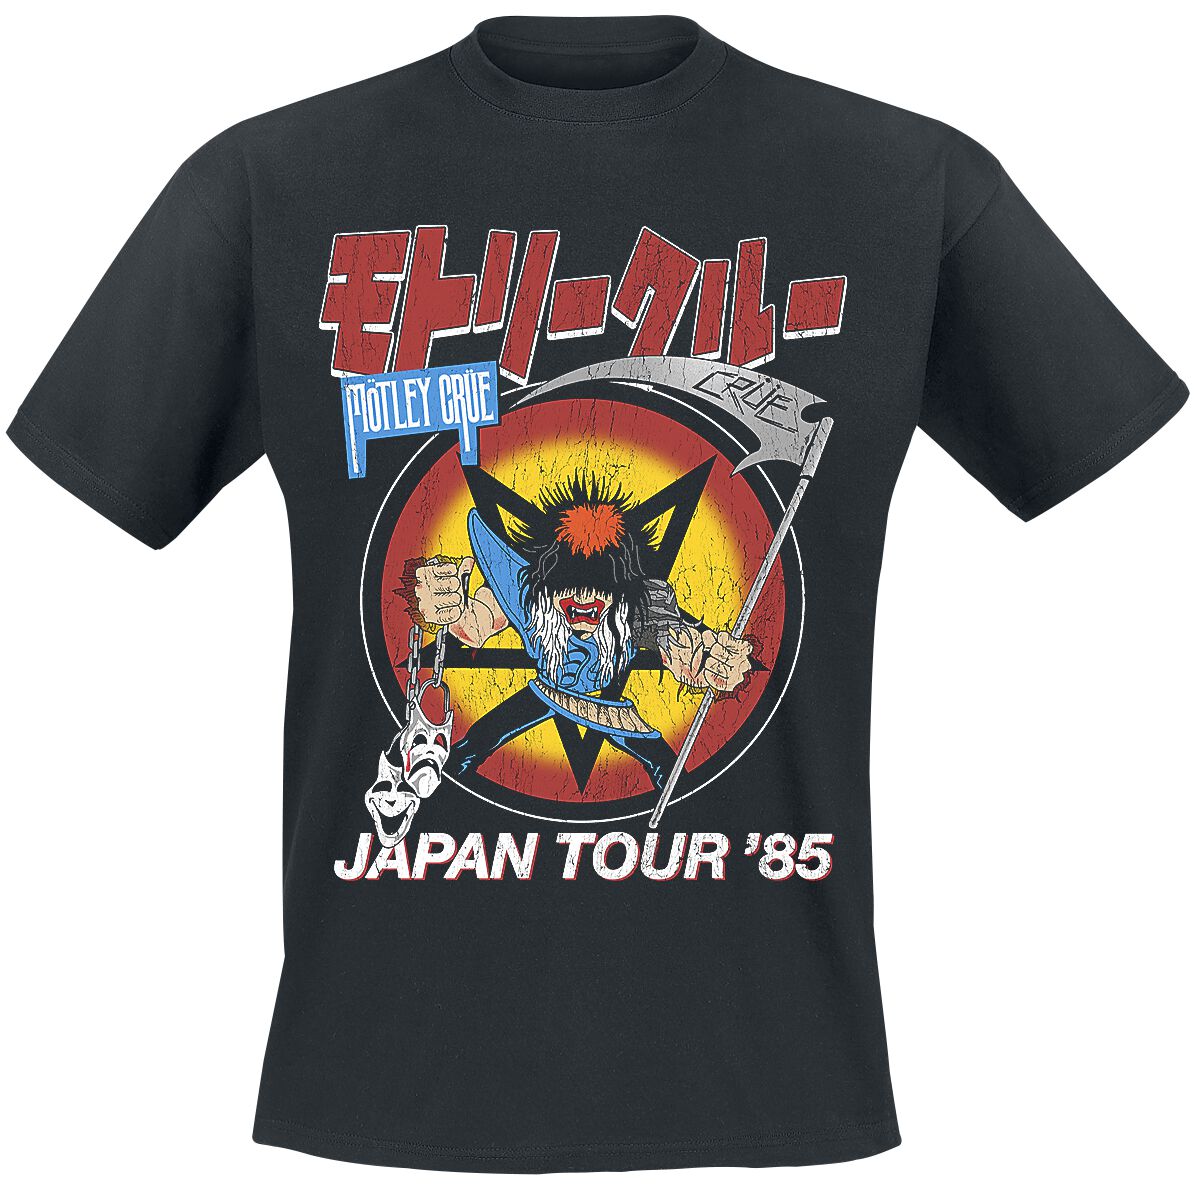 Mötley Crüe T-Shirt - Japan Tour - S bis 4XL - für Männer - Größe 3XL - schwarz  - Lizenziertes Merchandise!